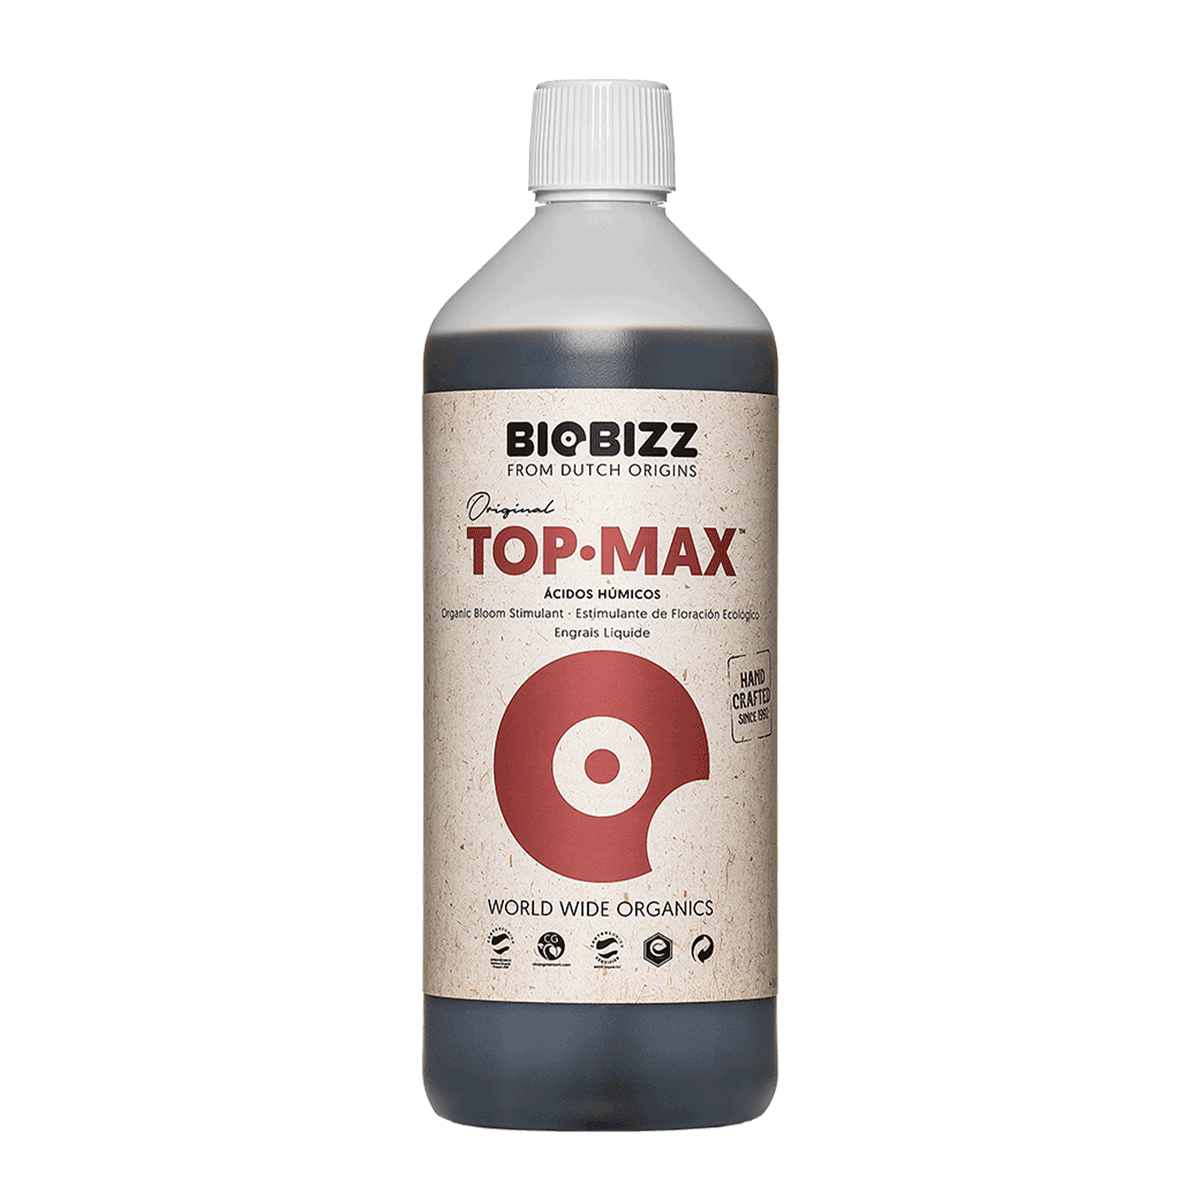 BioBizz Top-Max - Biologischer Blütebooster für maximale Erträge 